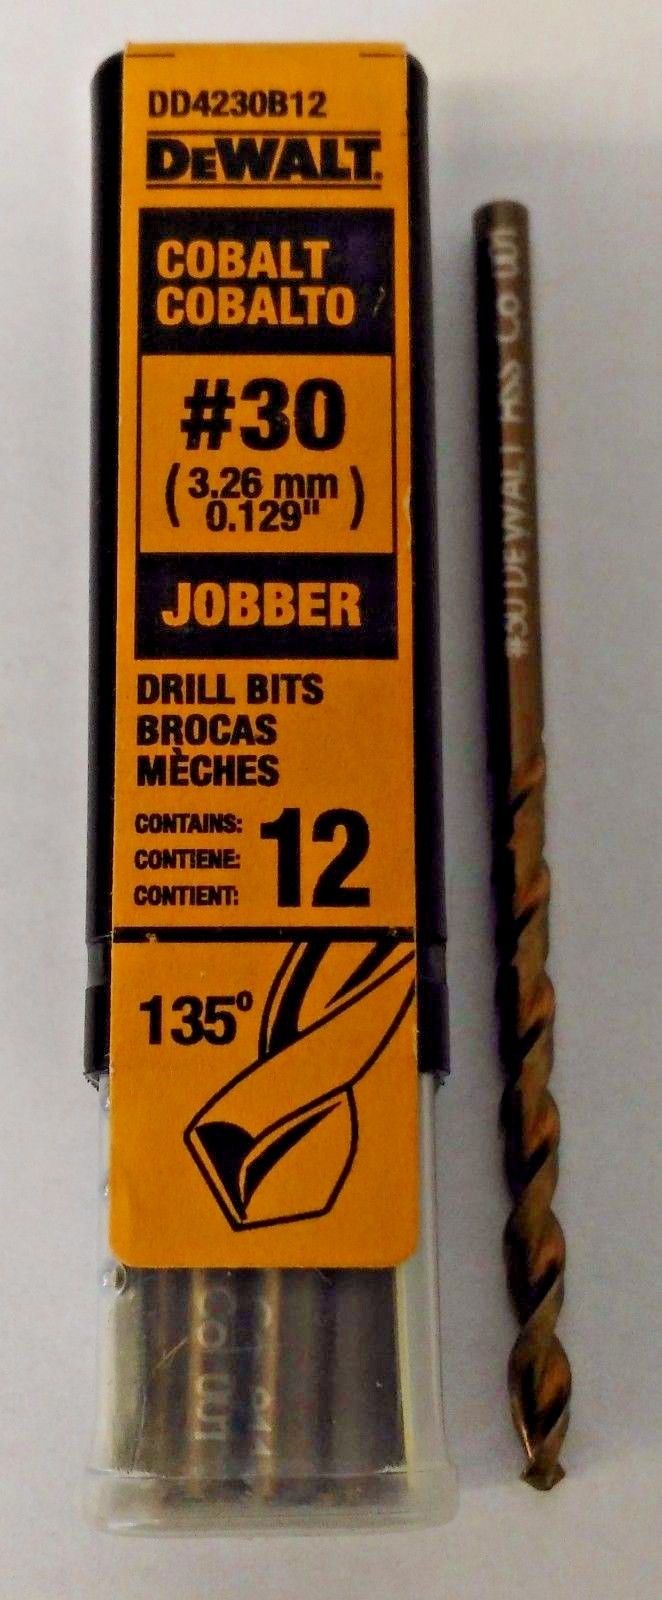 DeWalt DD4230B12 #30 Wire Cobalt Jobber Drill Bits 12 Germany